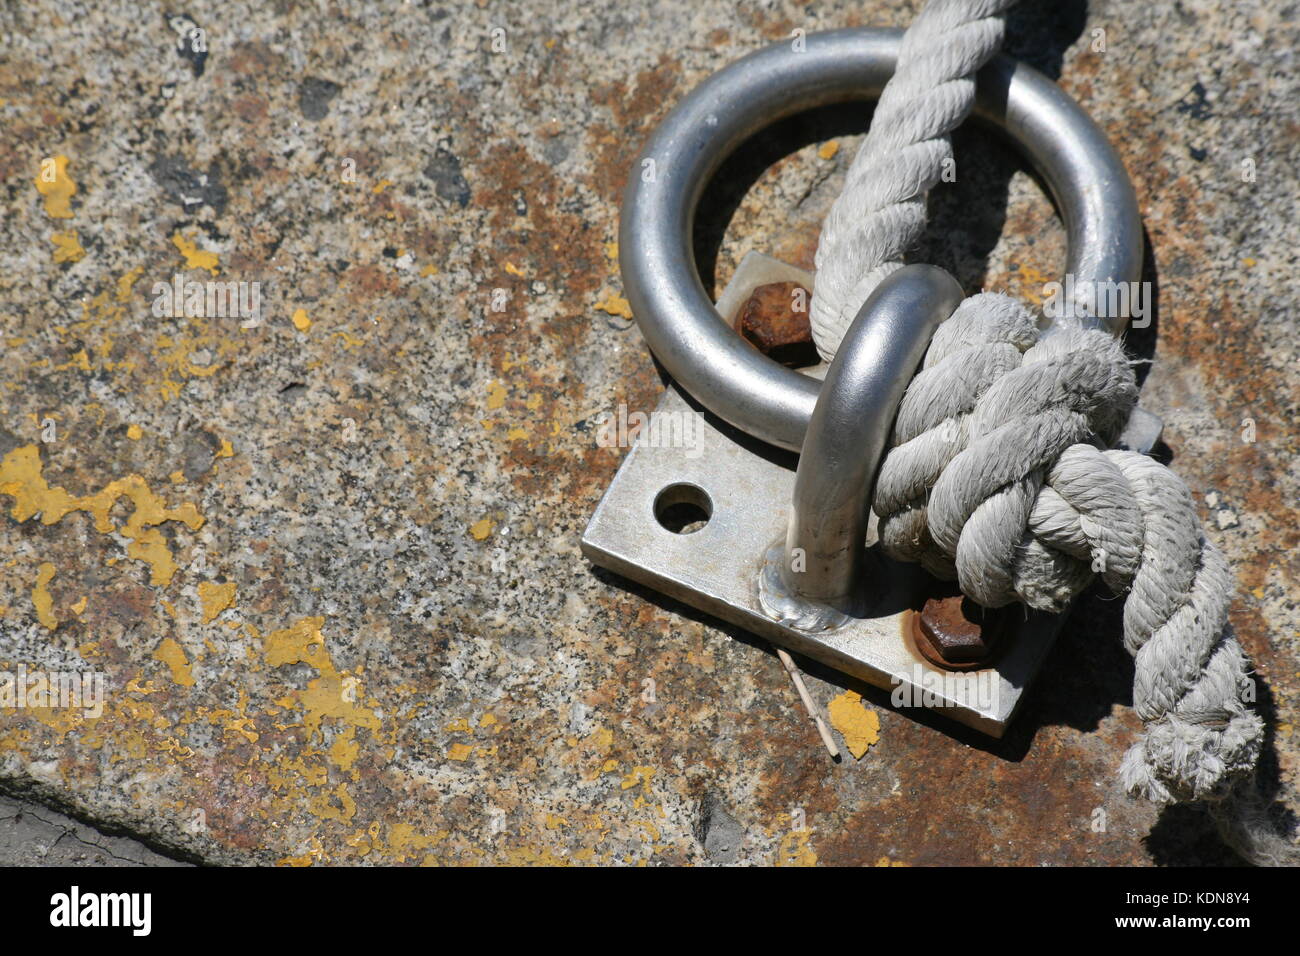 Eingetonierter Ring zur Sicherung von einer kette und einem Seil - ring for securing a chain and a rope Stock Photo